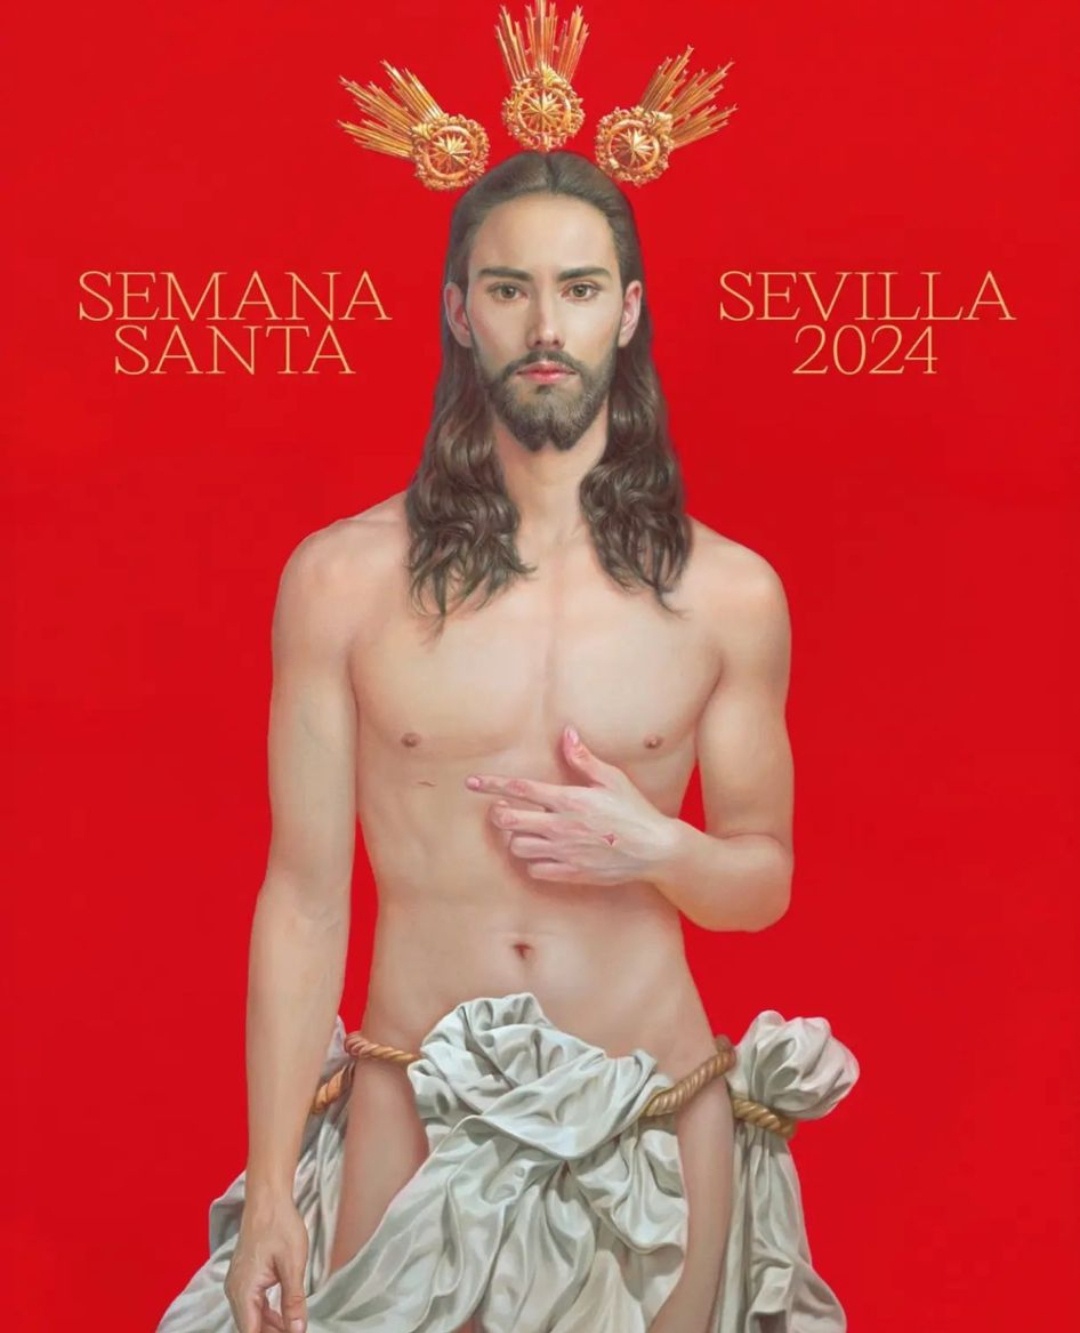 ÚLTIMA HORA: Se ha presentado oficialmente el cartel de la Semana Santa de Sevilla 2024